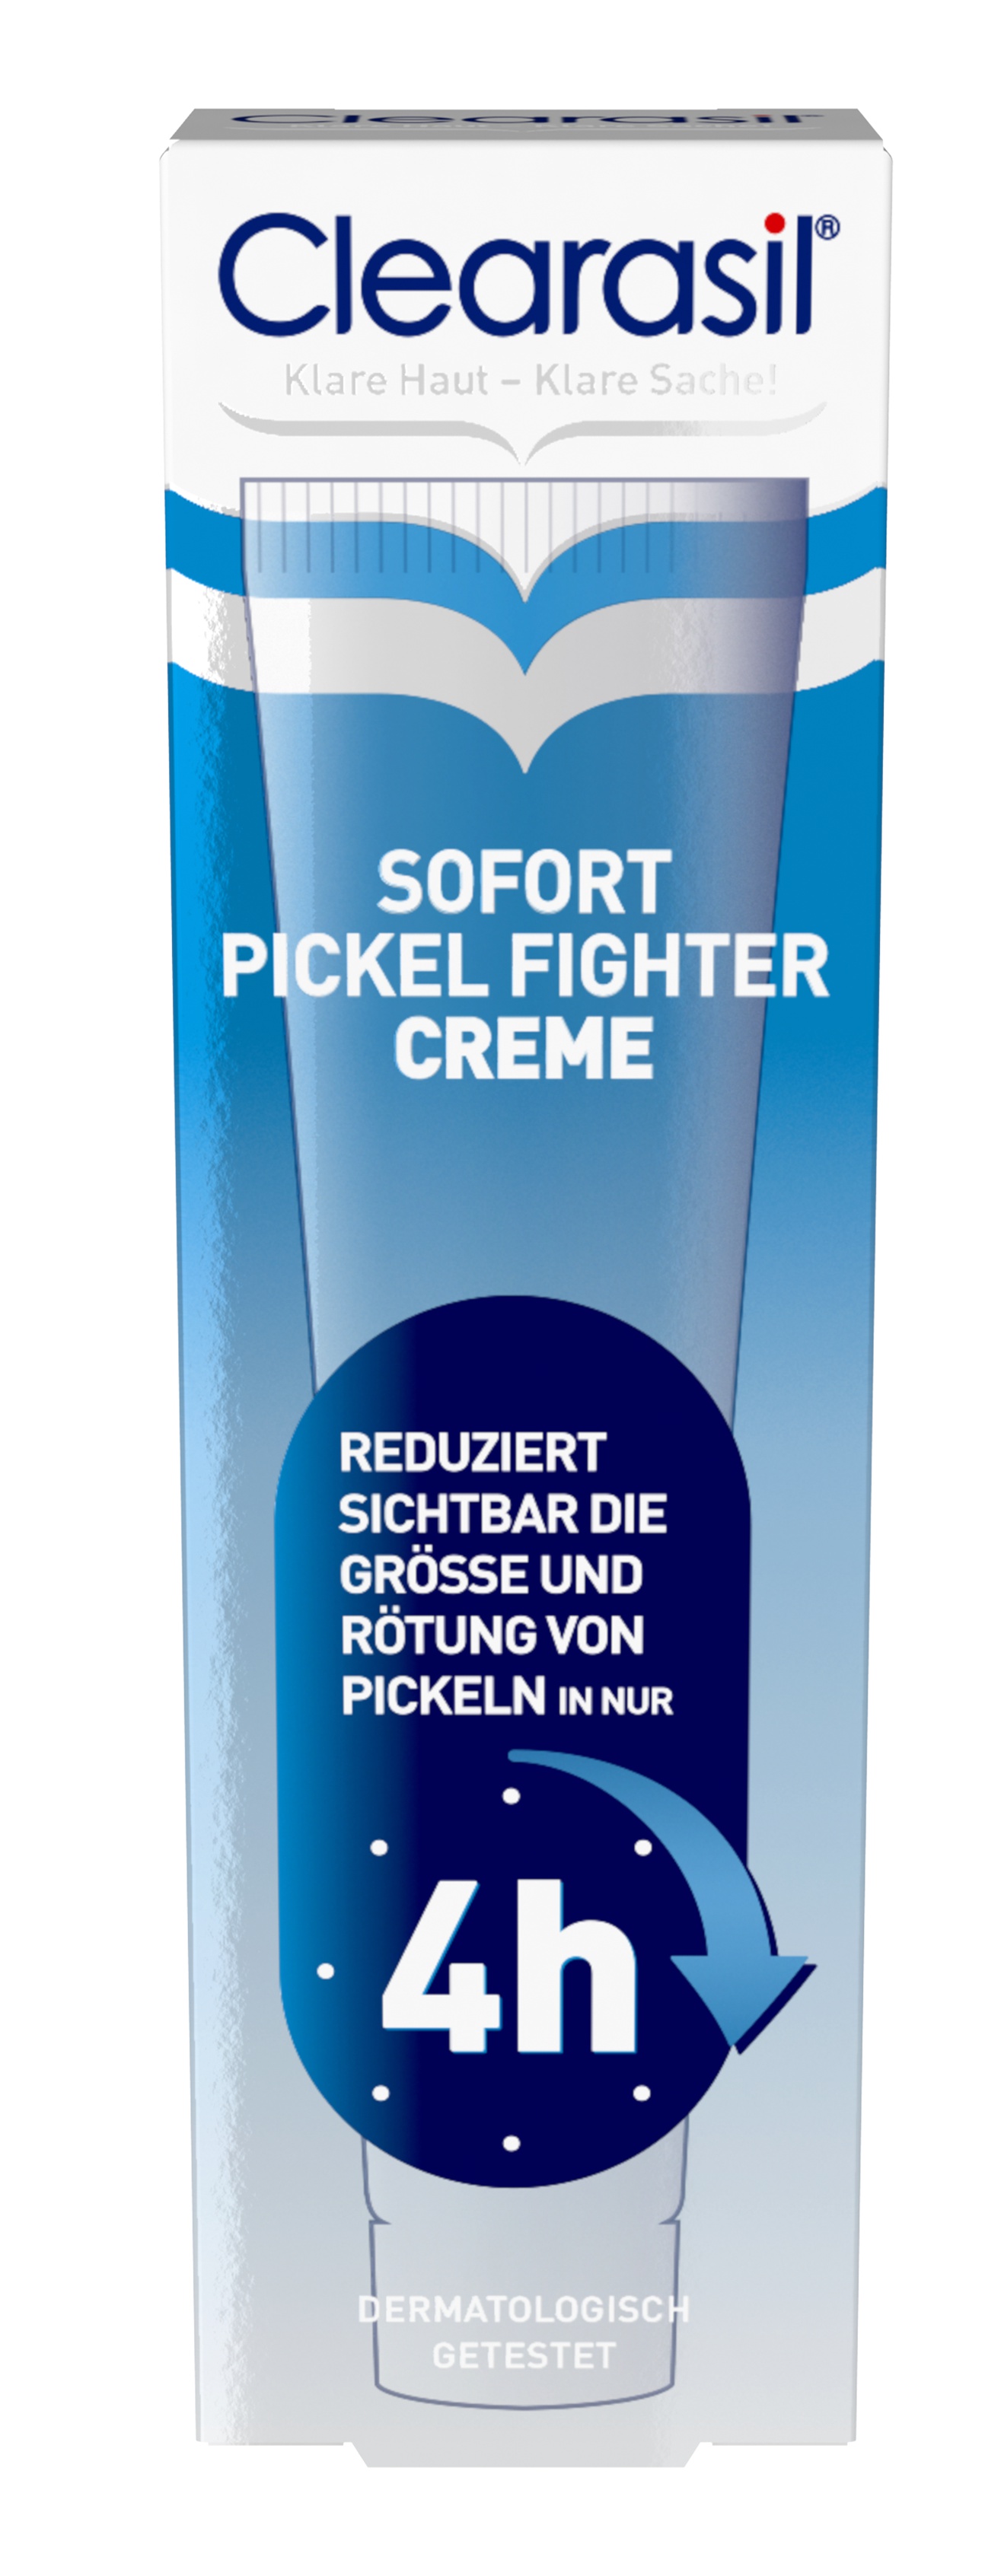 Clearasil Anti Pickel Creme Sofort Pickel Fighter Creme